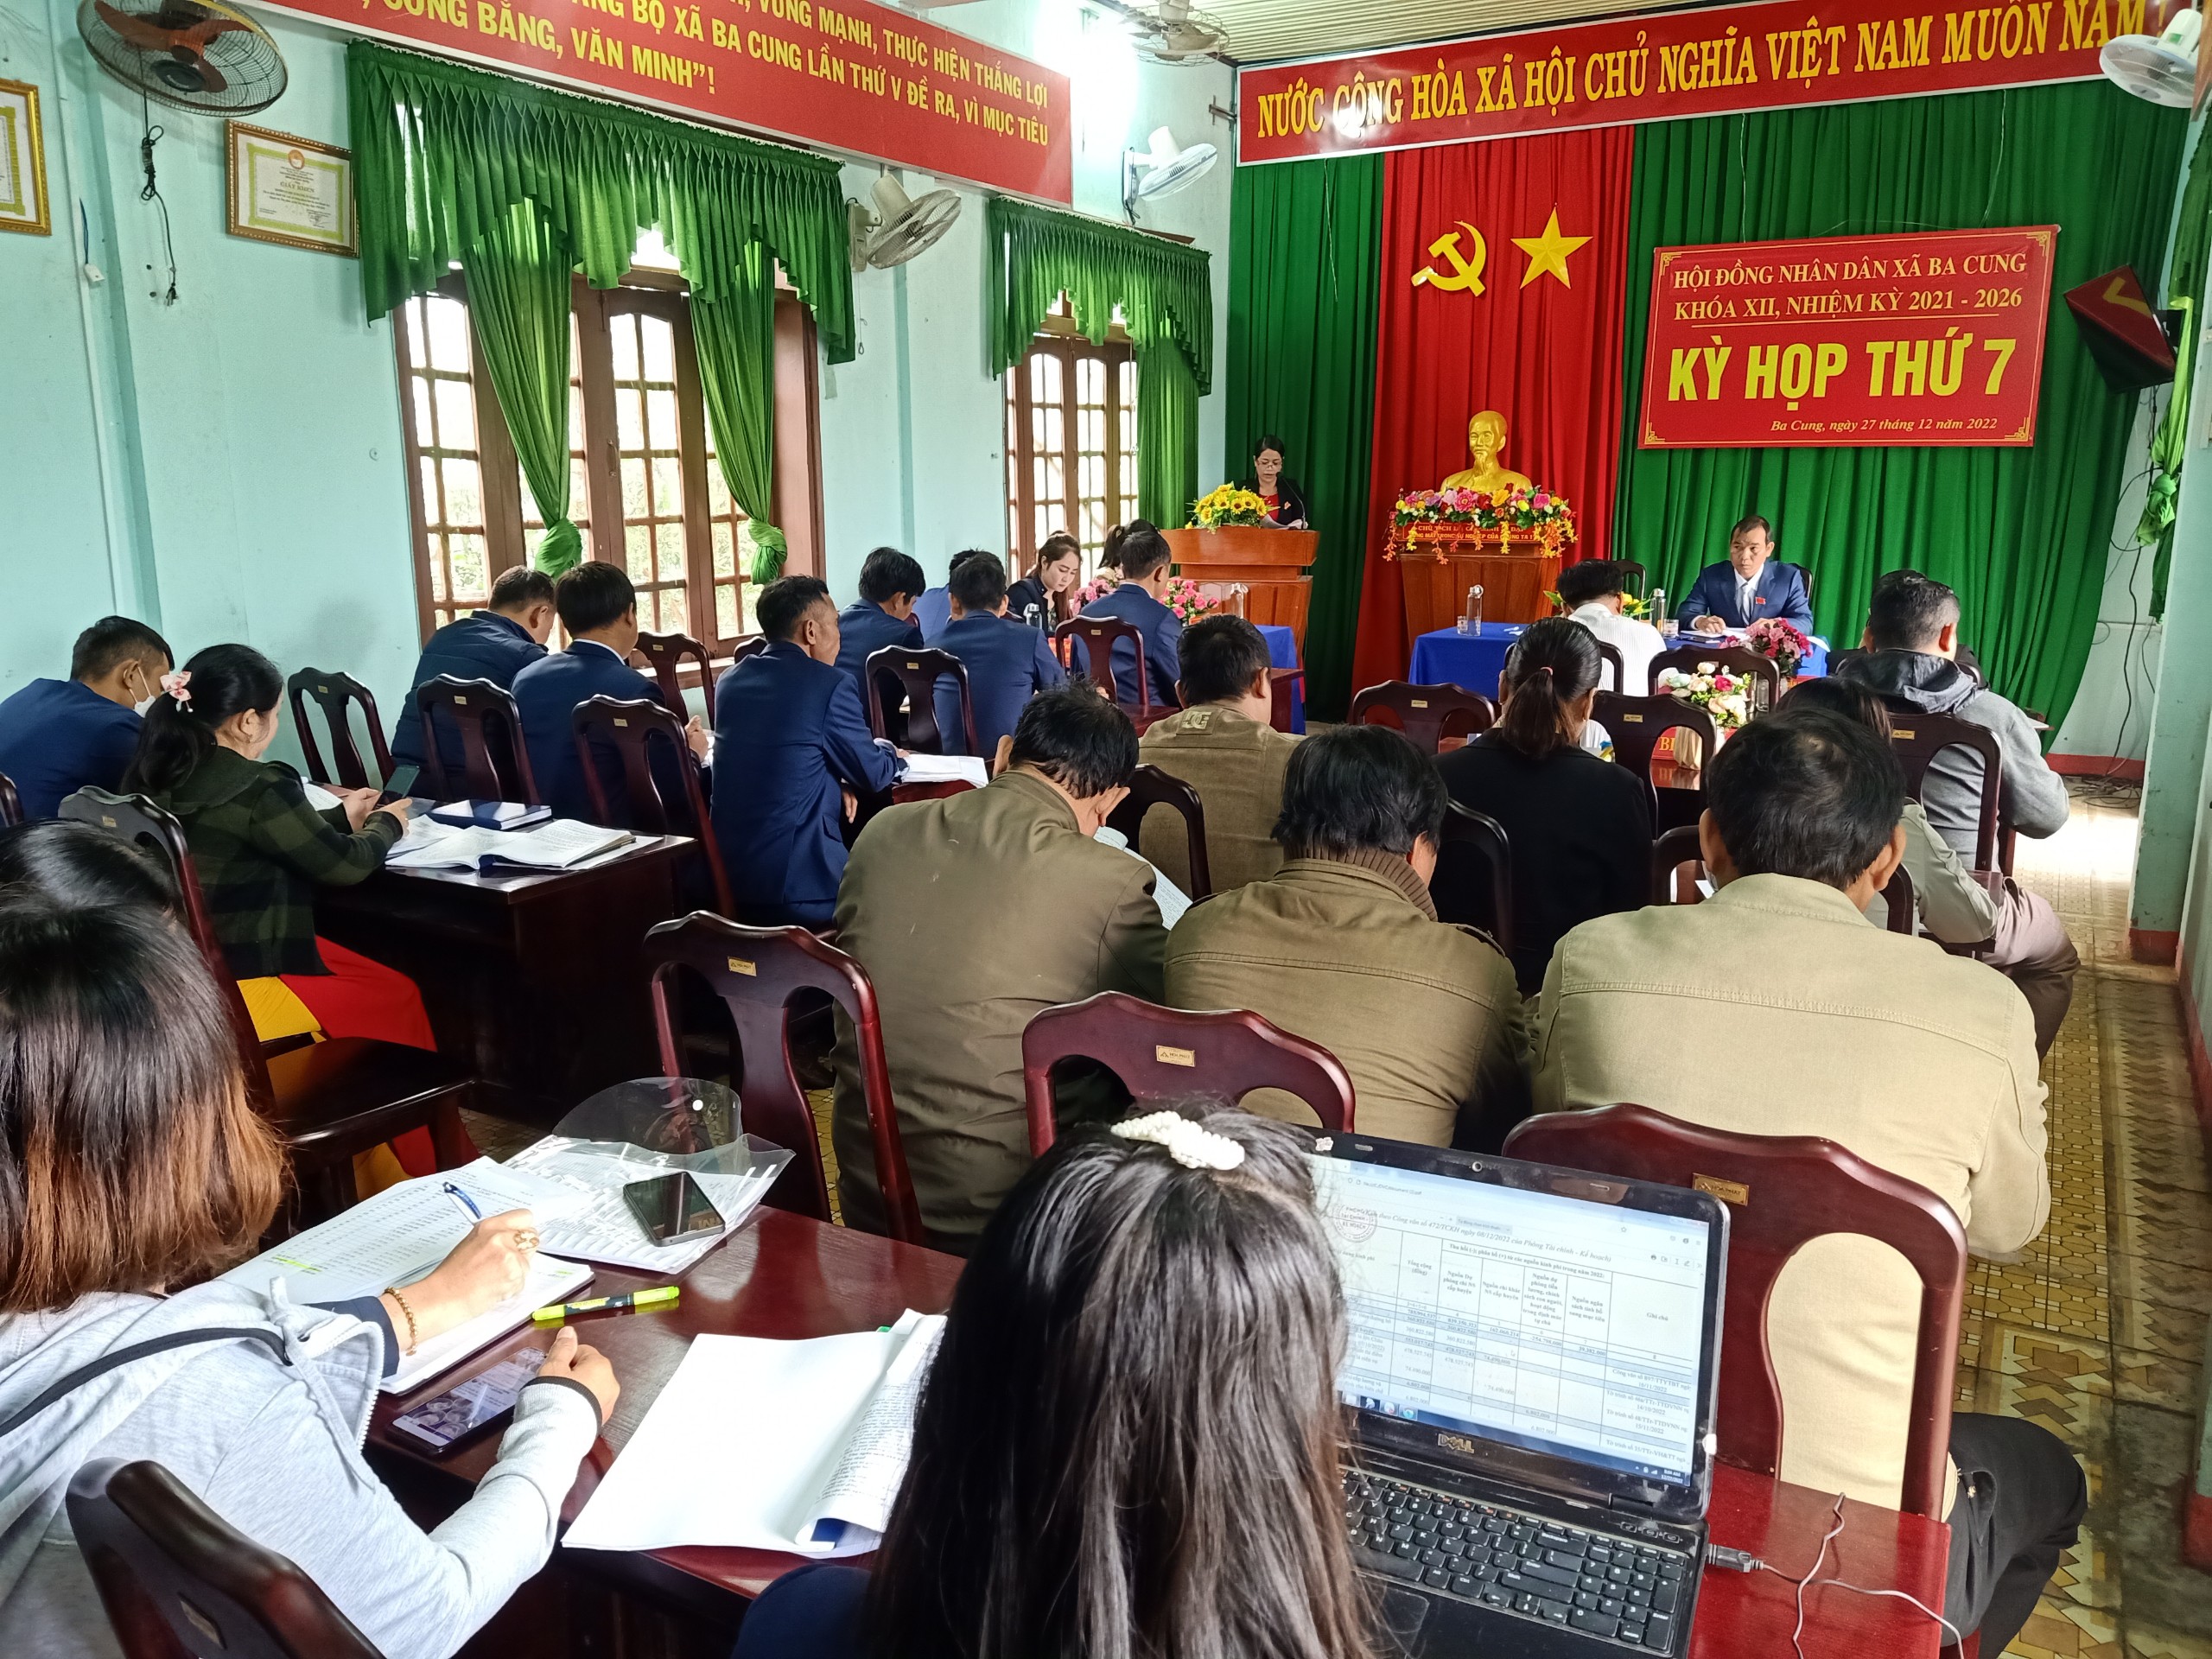 Hội đồng Nhân dân xã Ba Cung tổ chức kỳ họp thường lệ thứ 7, nhiệm kỳ 2021-2026